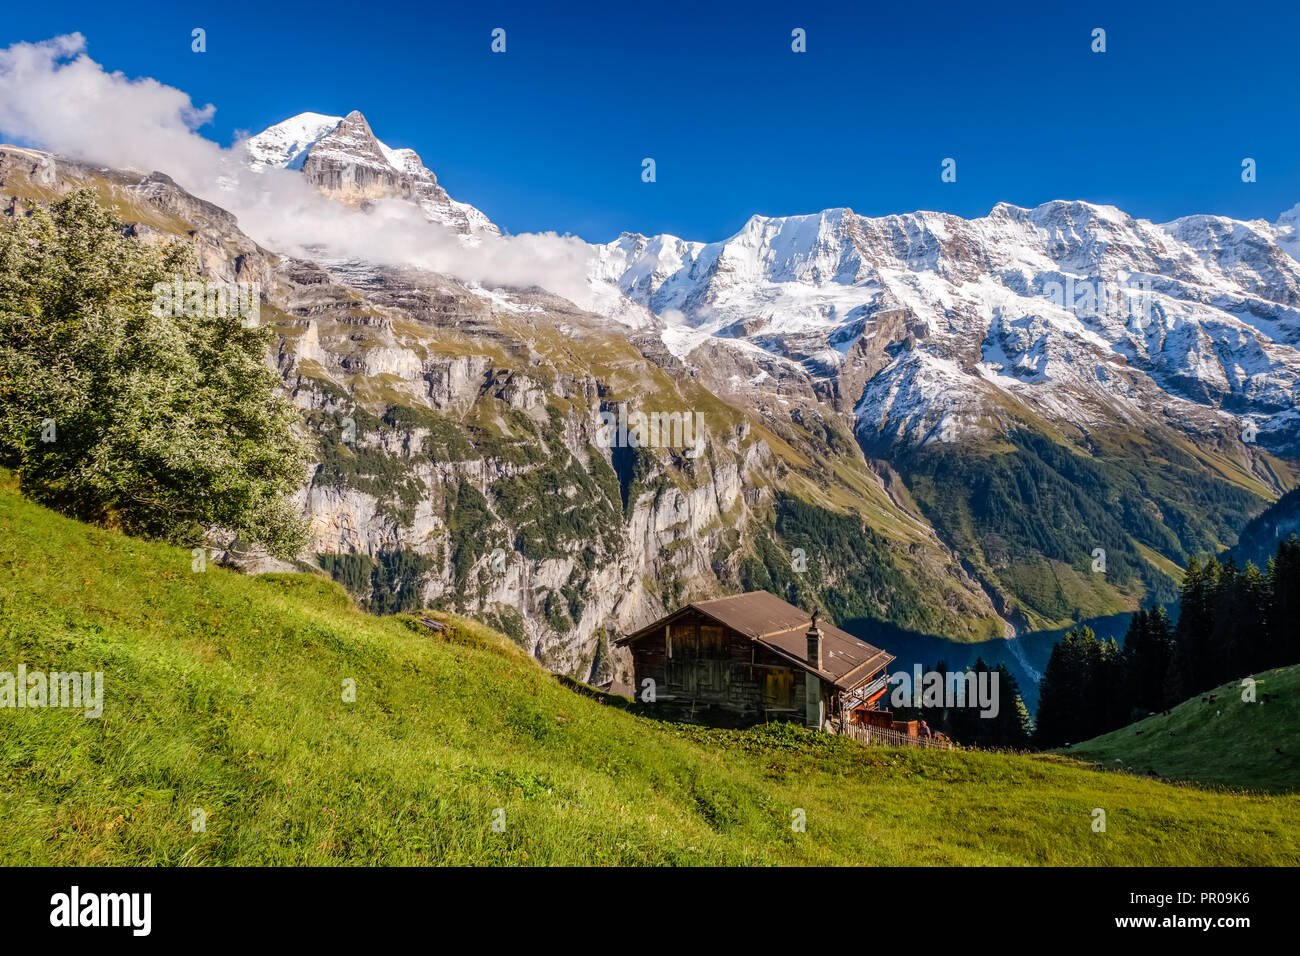 Des vues spectaculaires, près de la ville de Nakhon Si Thammarat (Oberland Bernois, Suisse). Murren est un village de montagne sur 1 650 m et est inaccessible par voie publique Banque D'Images